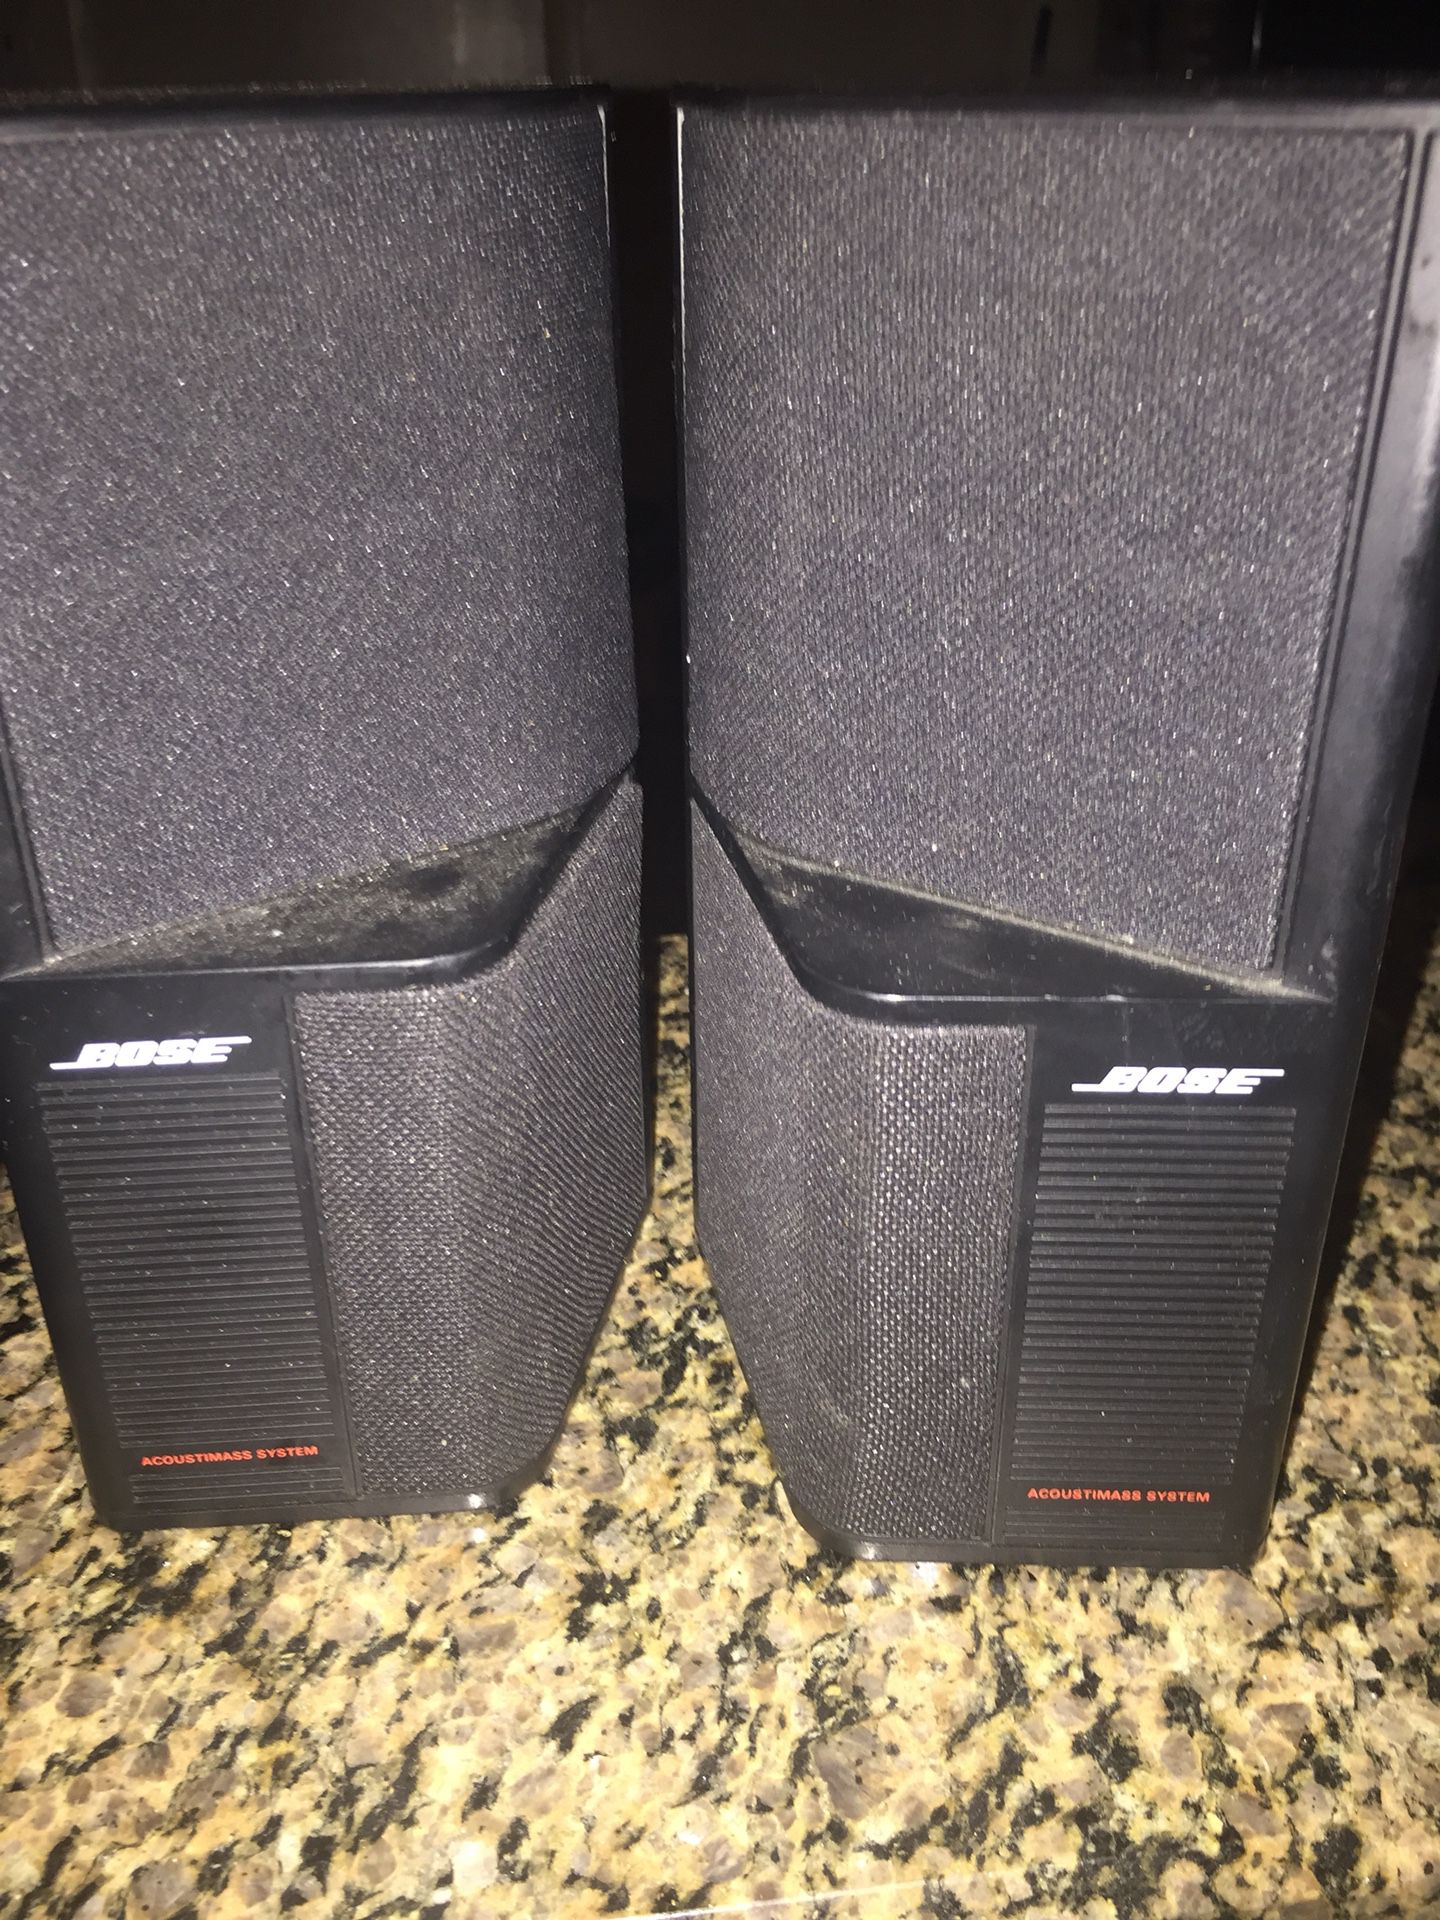 BOSE speakers